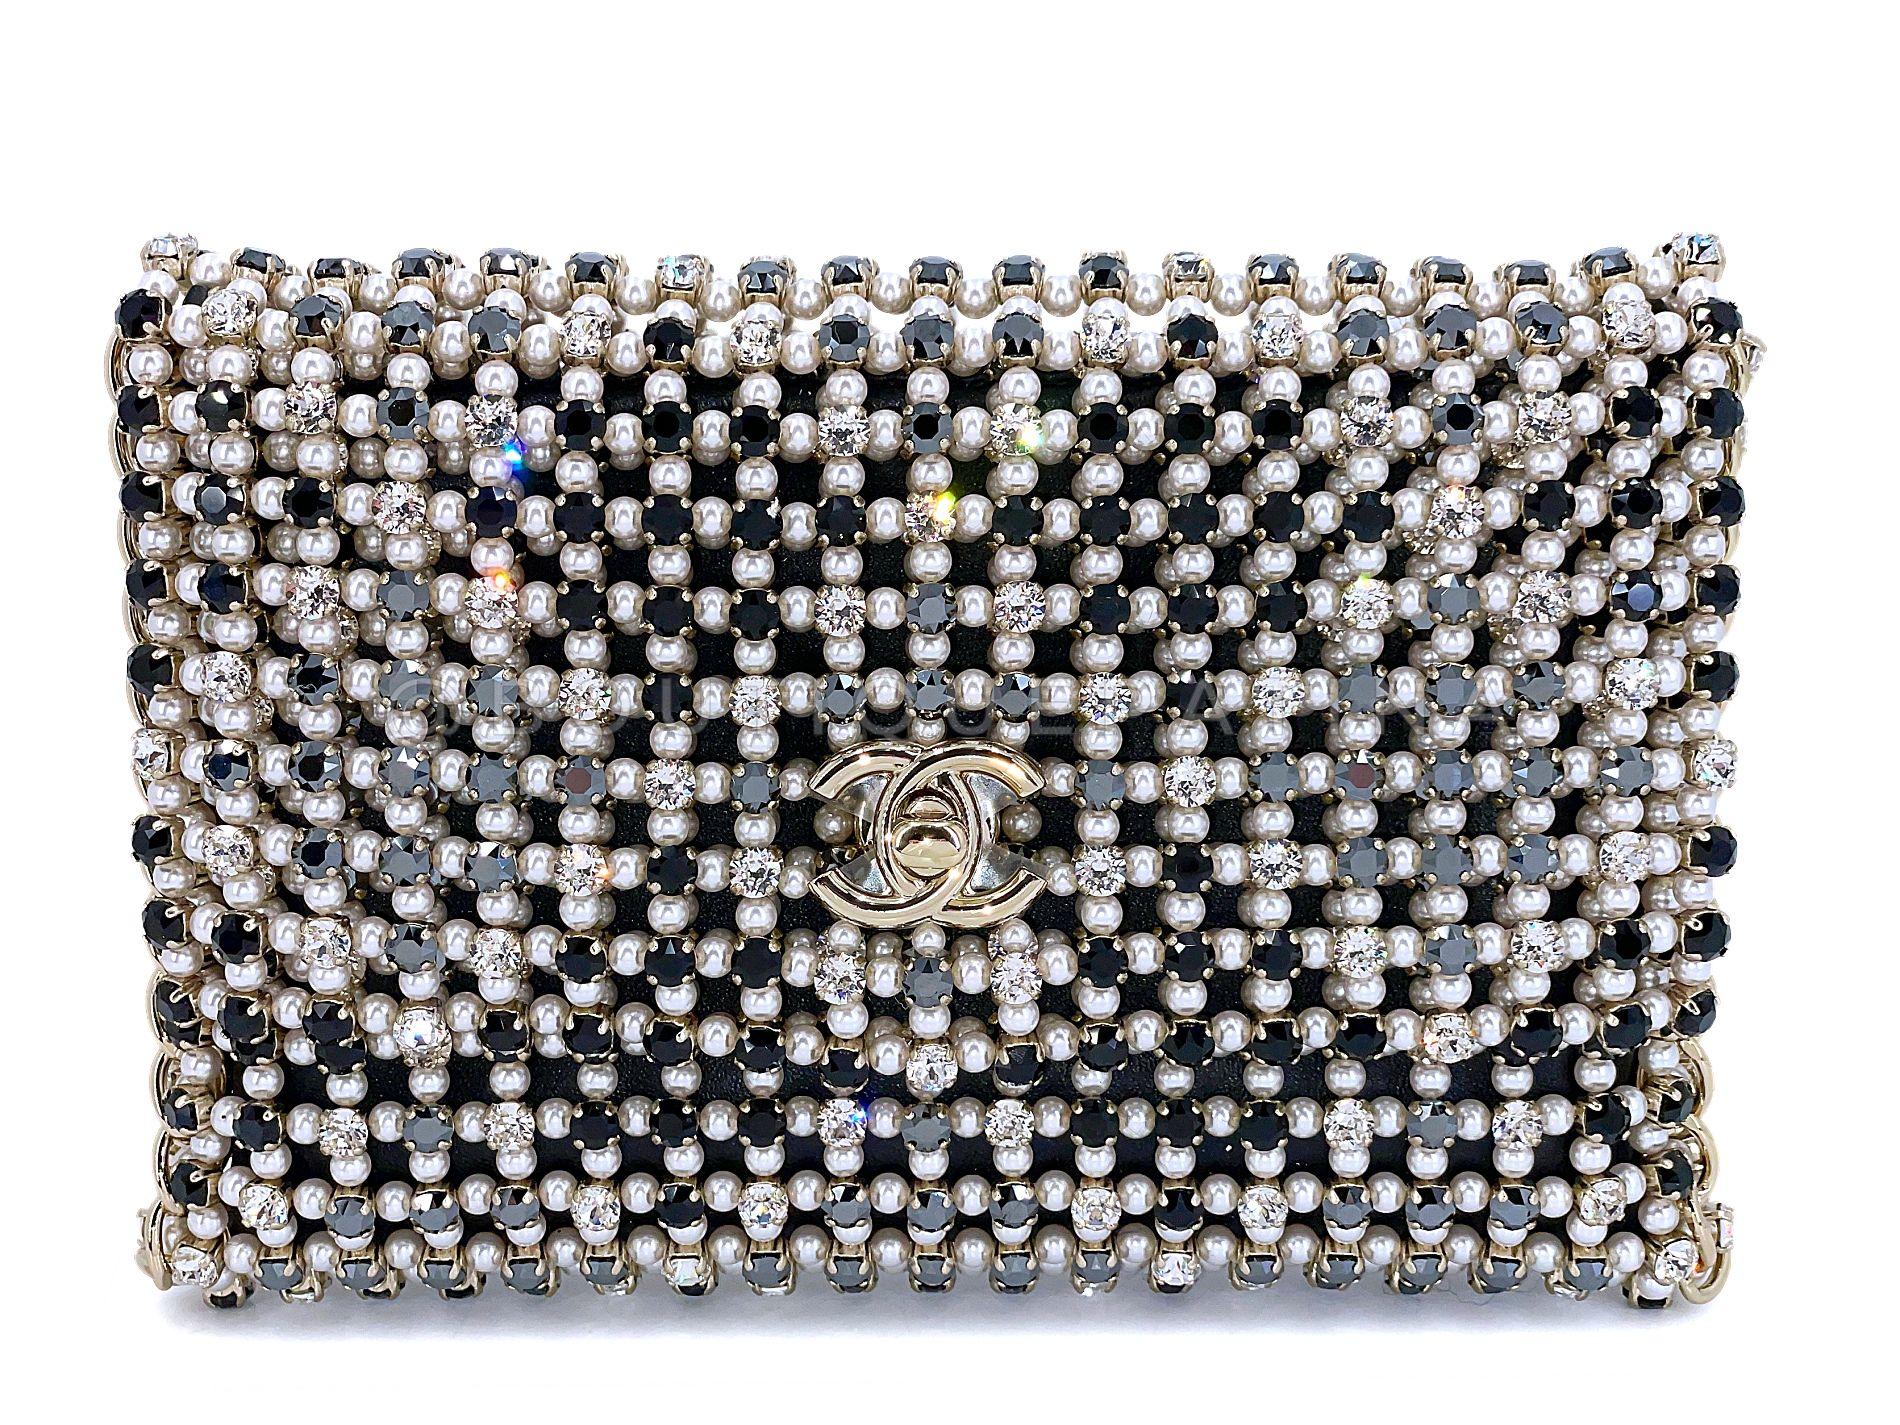 Article de magasin : 67895
L'un des sacs les plus convoités des récentes collections S est ce sac à rabat Chanel 2021 Evening Gold Pearls Crystal de la collection automne-hiver 2021. 

Un extérieur entièrement réalisé en fausses perles, gros